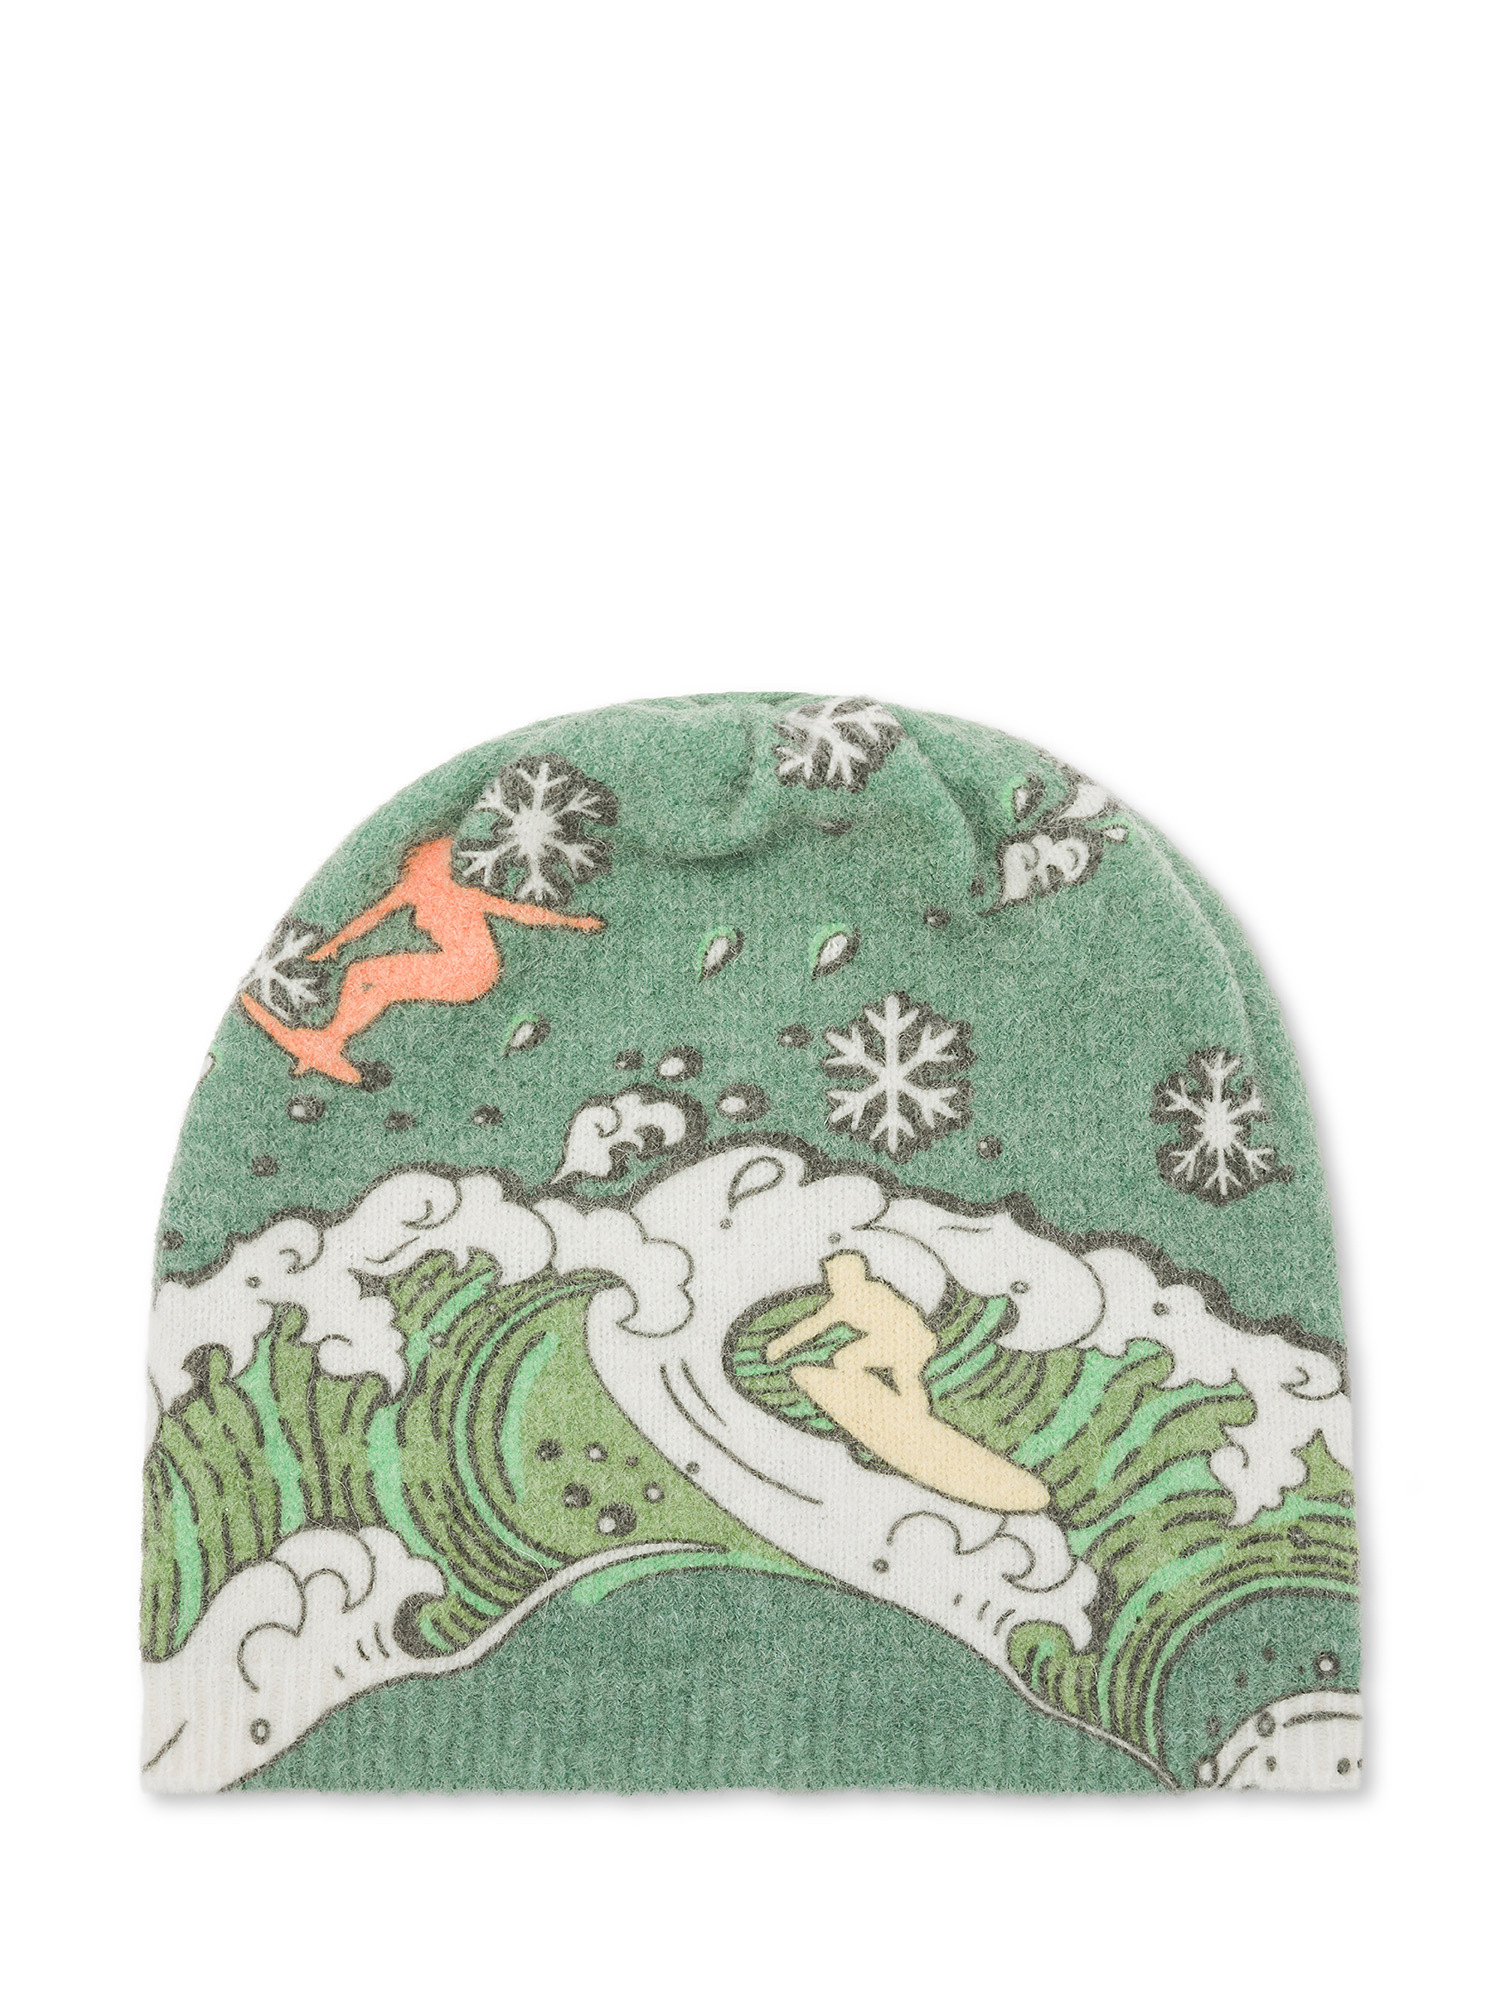 Рождественская кепка Surfer's от Paula Cademartori. Paula Cademartori X Oxfam, зеленый